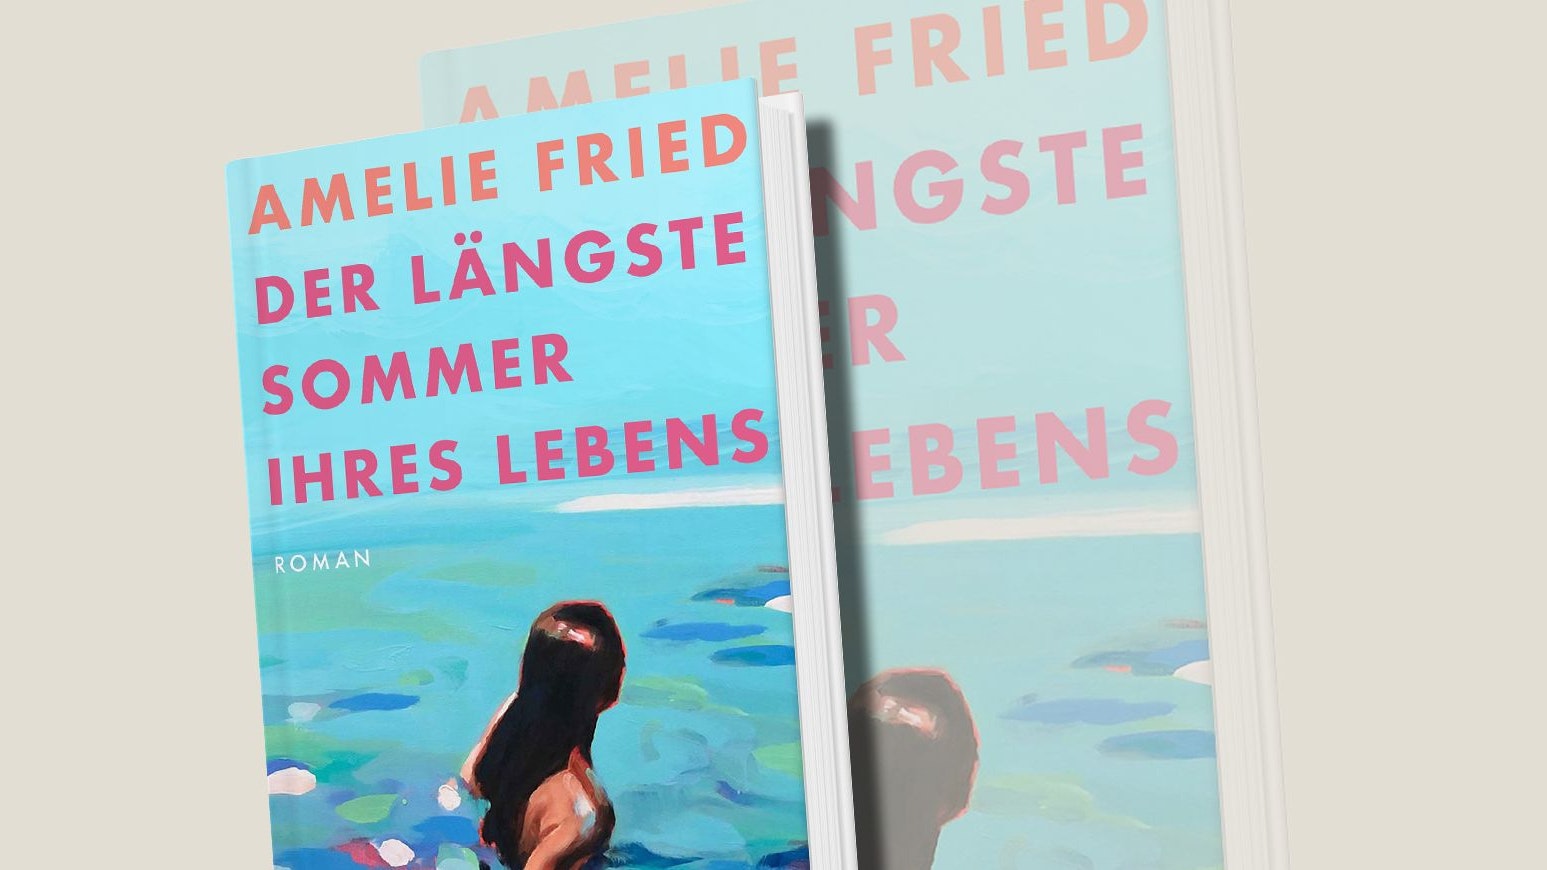 Amelie Fried, "Der längste Sommer ihres Lebens", Heyne, 22 Euro